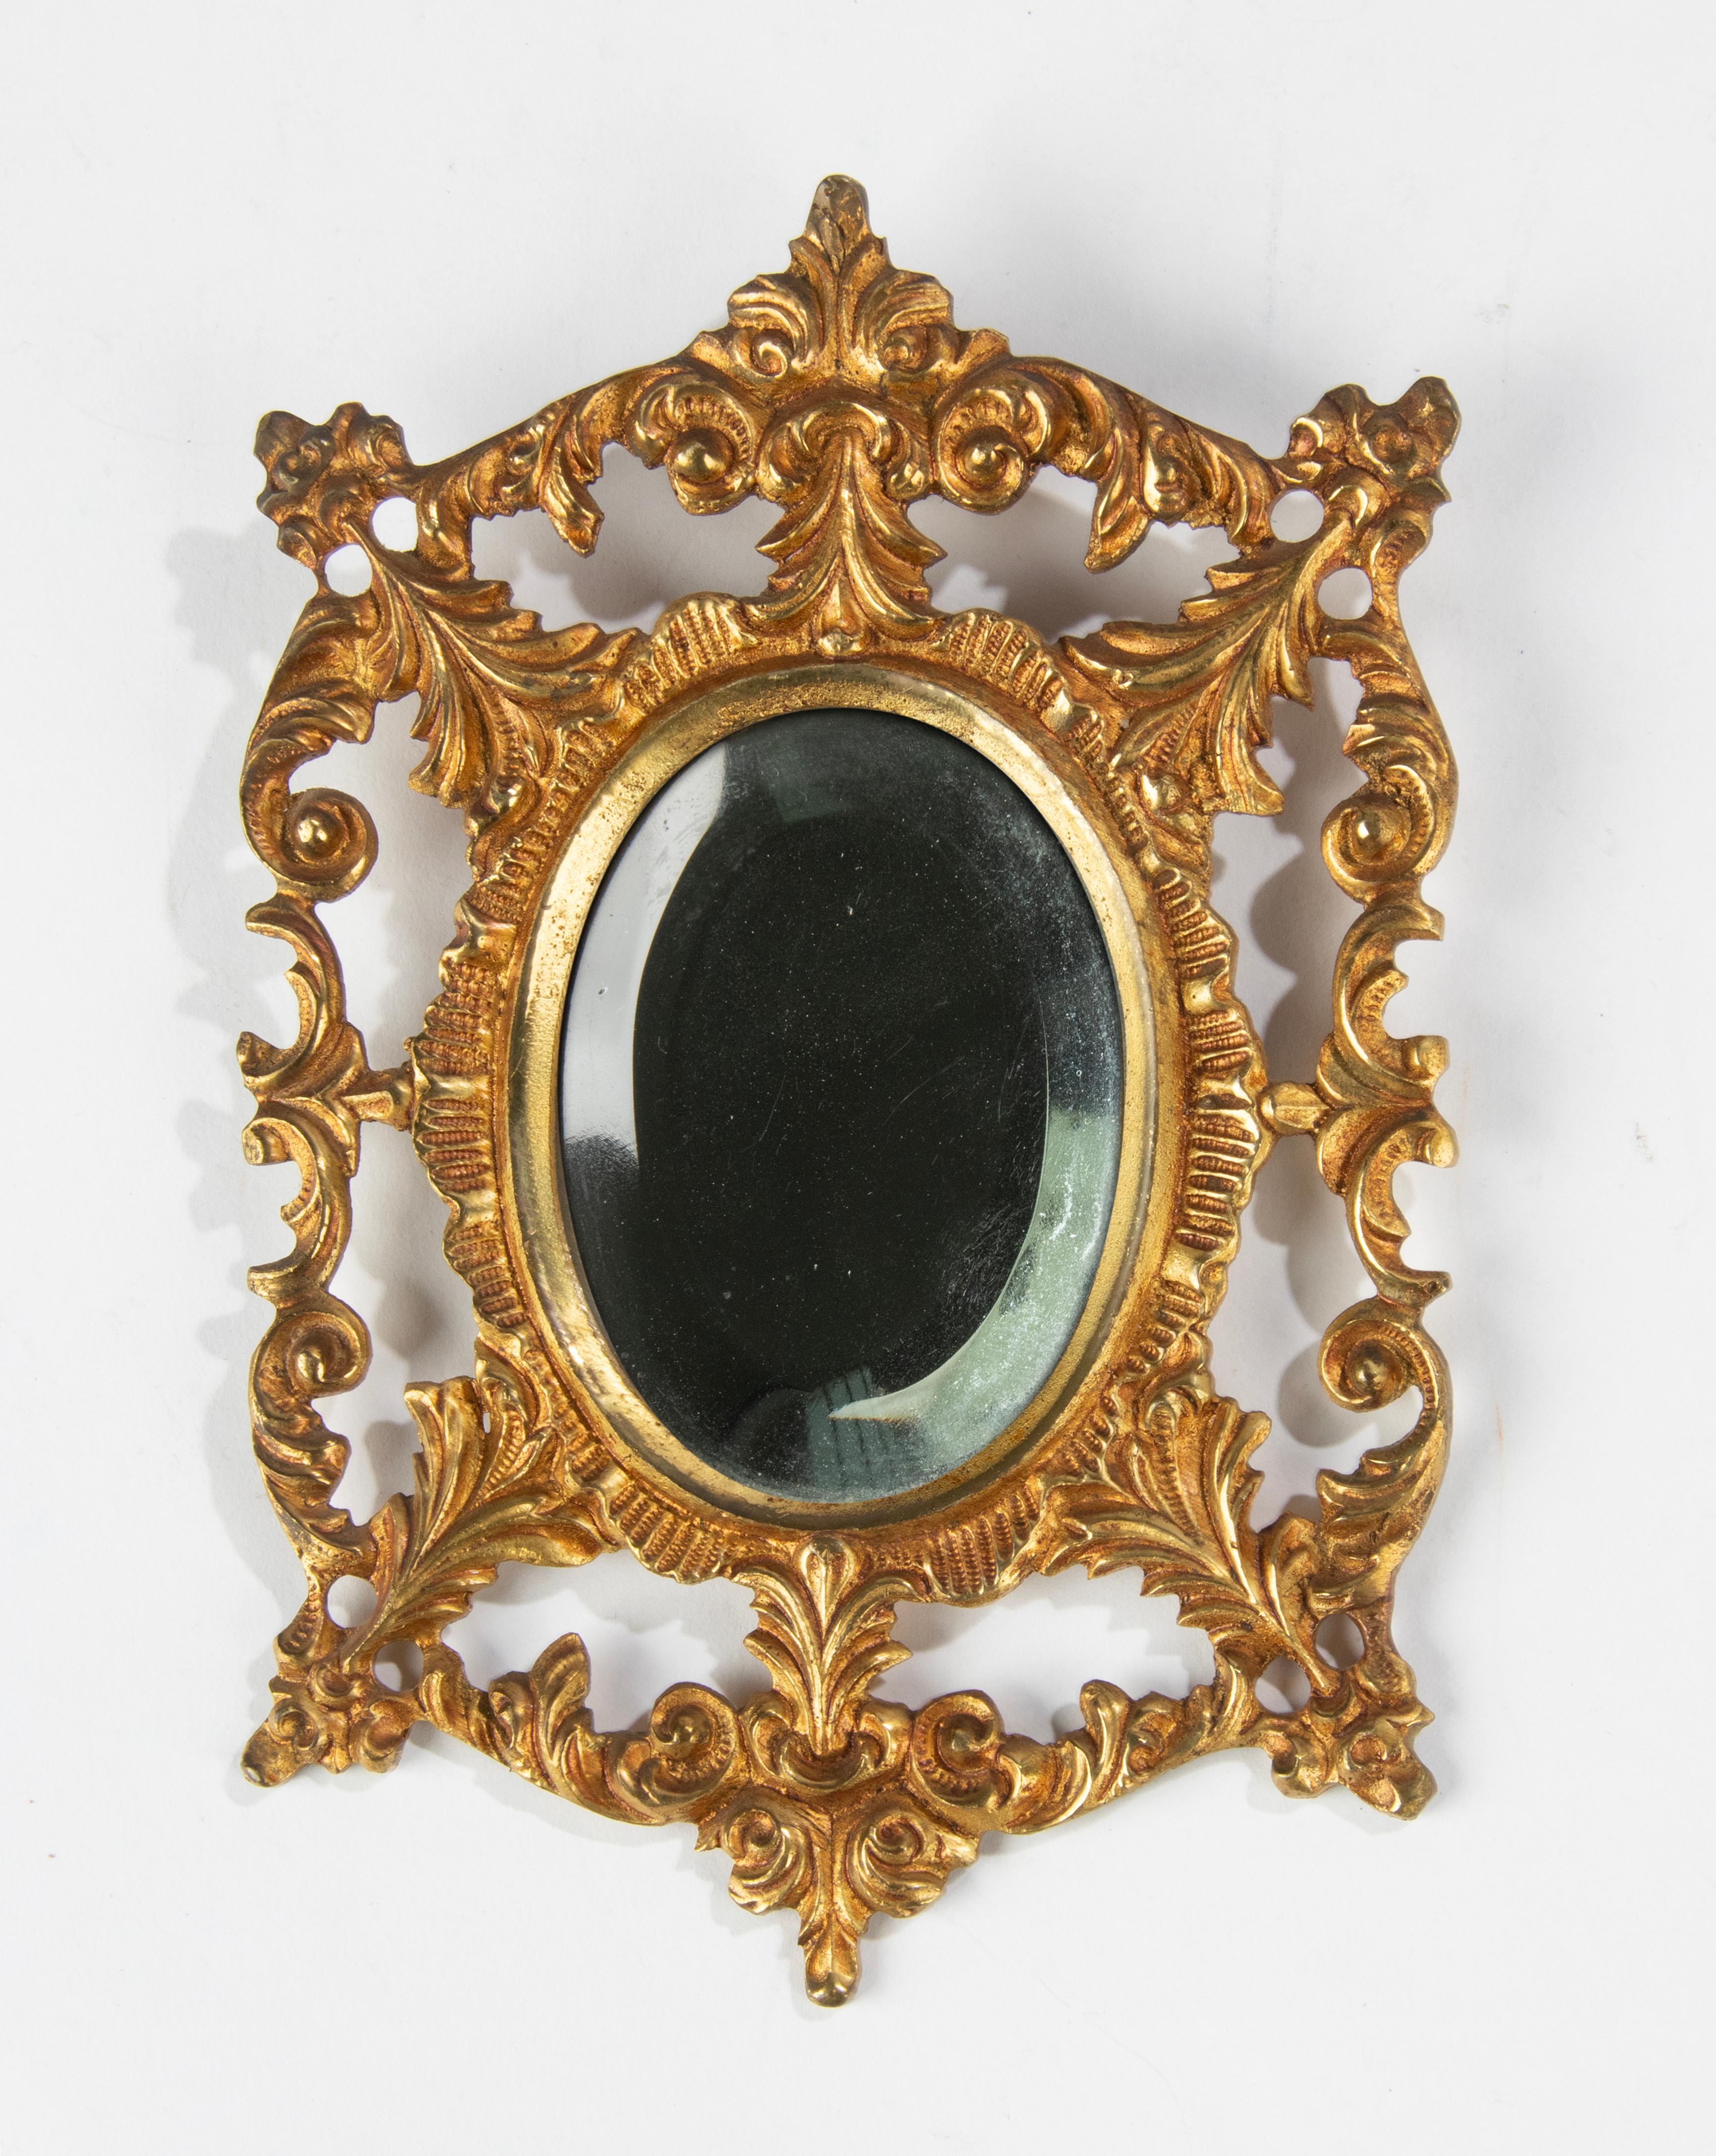 Ein kleiner antiker Wandspiegel aus Bronze mit abgeschrägtem Spiegelglas. Der Bronzerahmen hat eine kaltvergoldete Patina. Hergestellt aus Tinte Frankreich, ca. 1890-1900
Abmessungen: 17 (H) x 11 x 1 cm
Kostenloser Versand